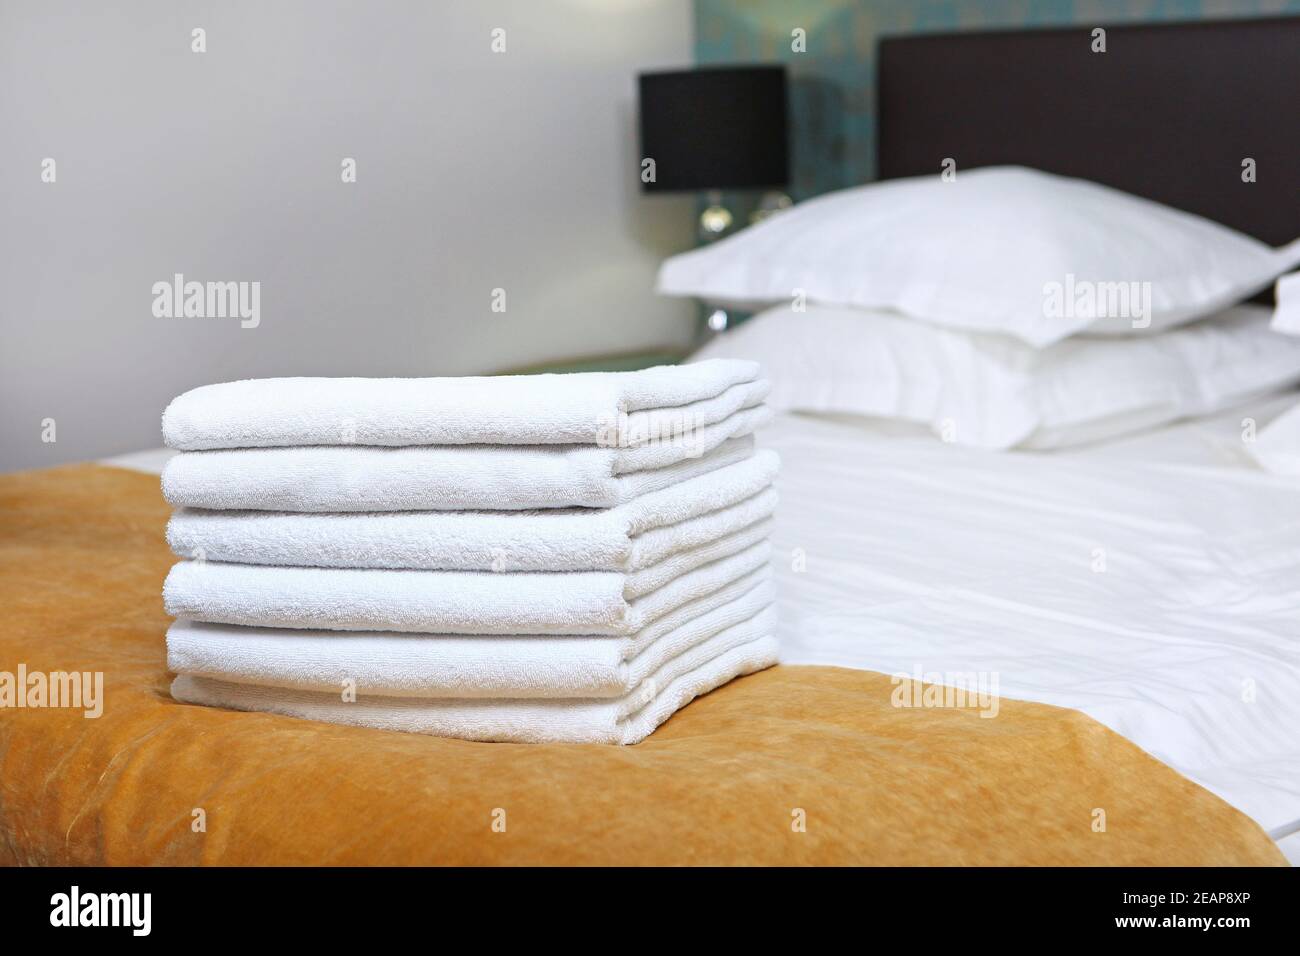 Zimmerreinigung in einem teuren Hotel. Ein Satz saubere Handtücher. Hygieneartikel. Das Doppelbett ist außer Fokus. Das Konzept des Qualitätsdienstes im Hotel. Hotelbusiness. Stockfoto